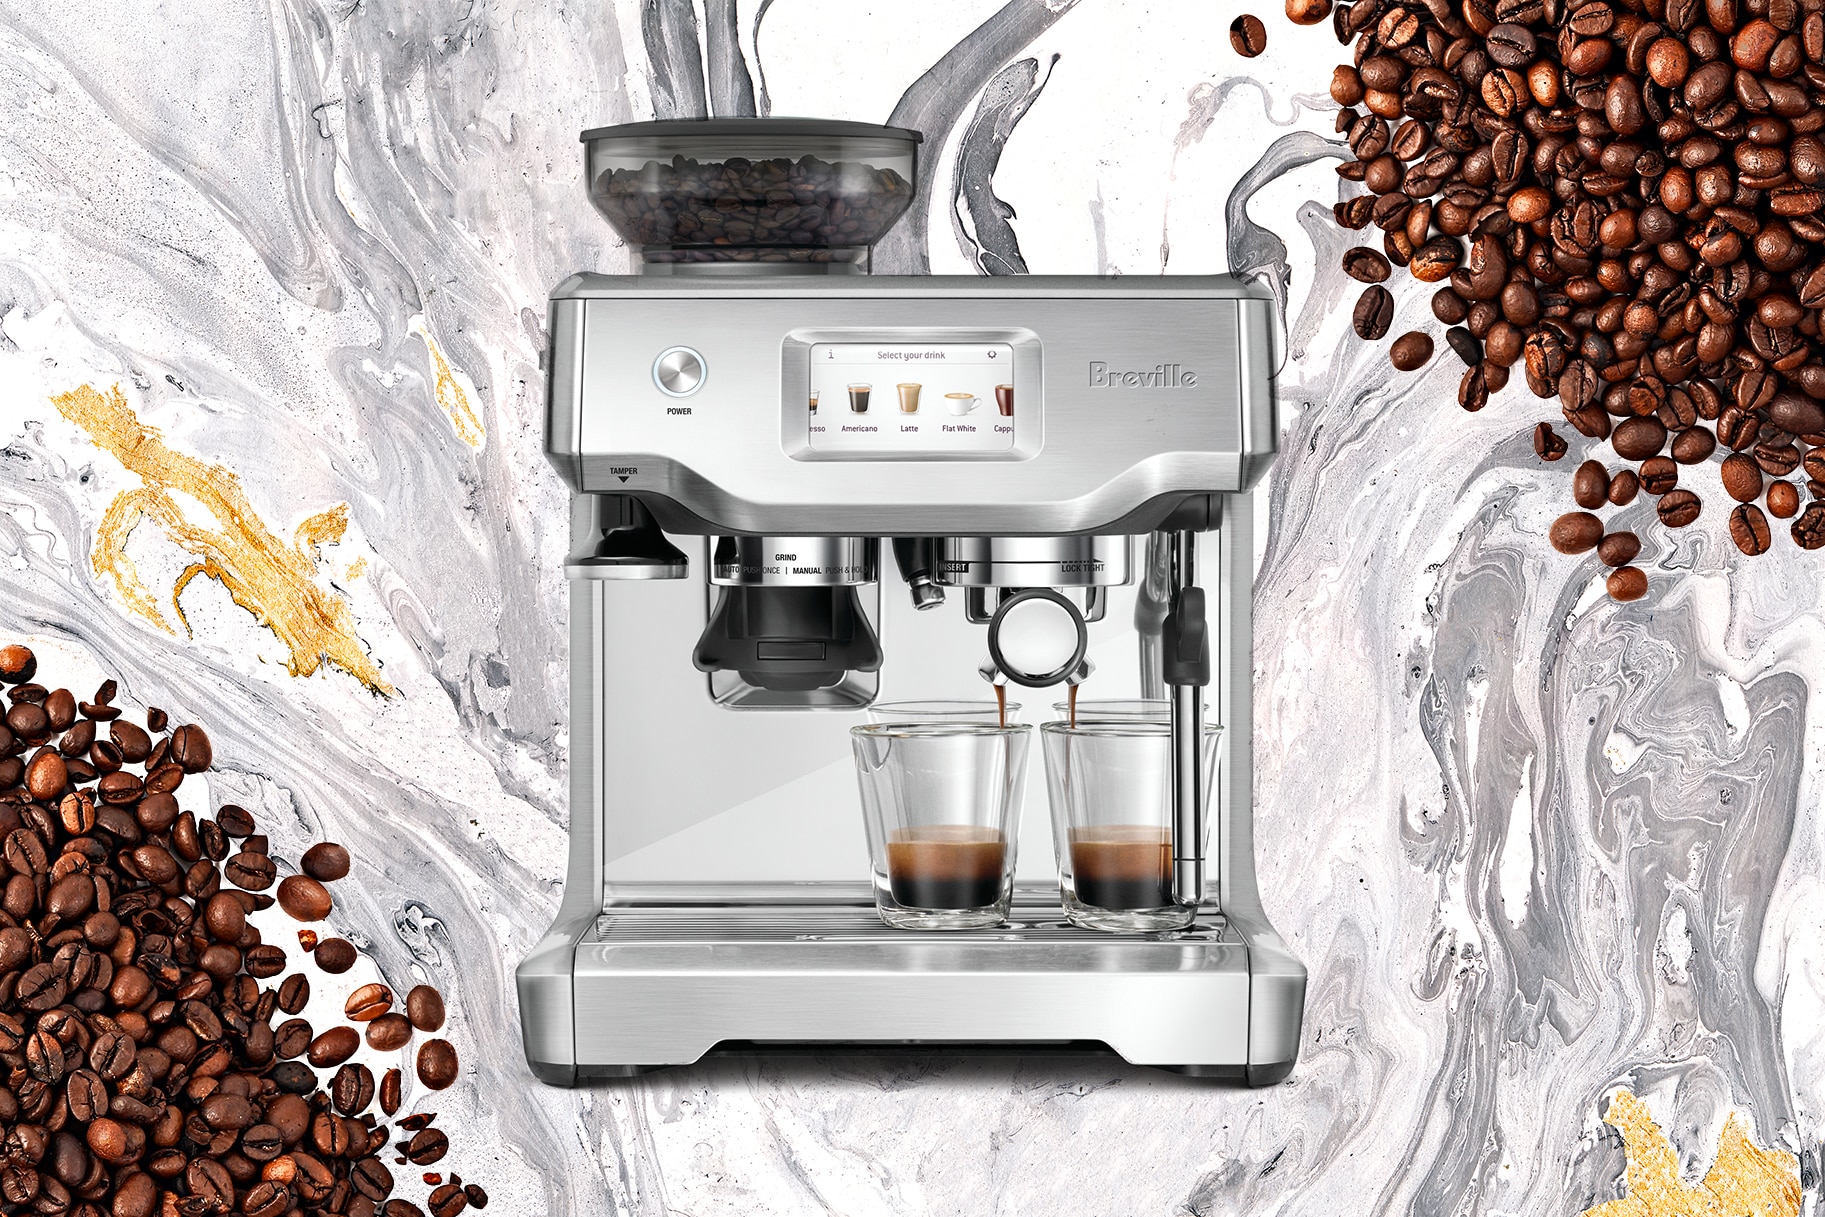 6 Months Breville Barista Express Review - Still the Best Espresso Machine?  